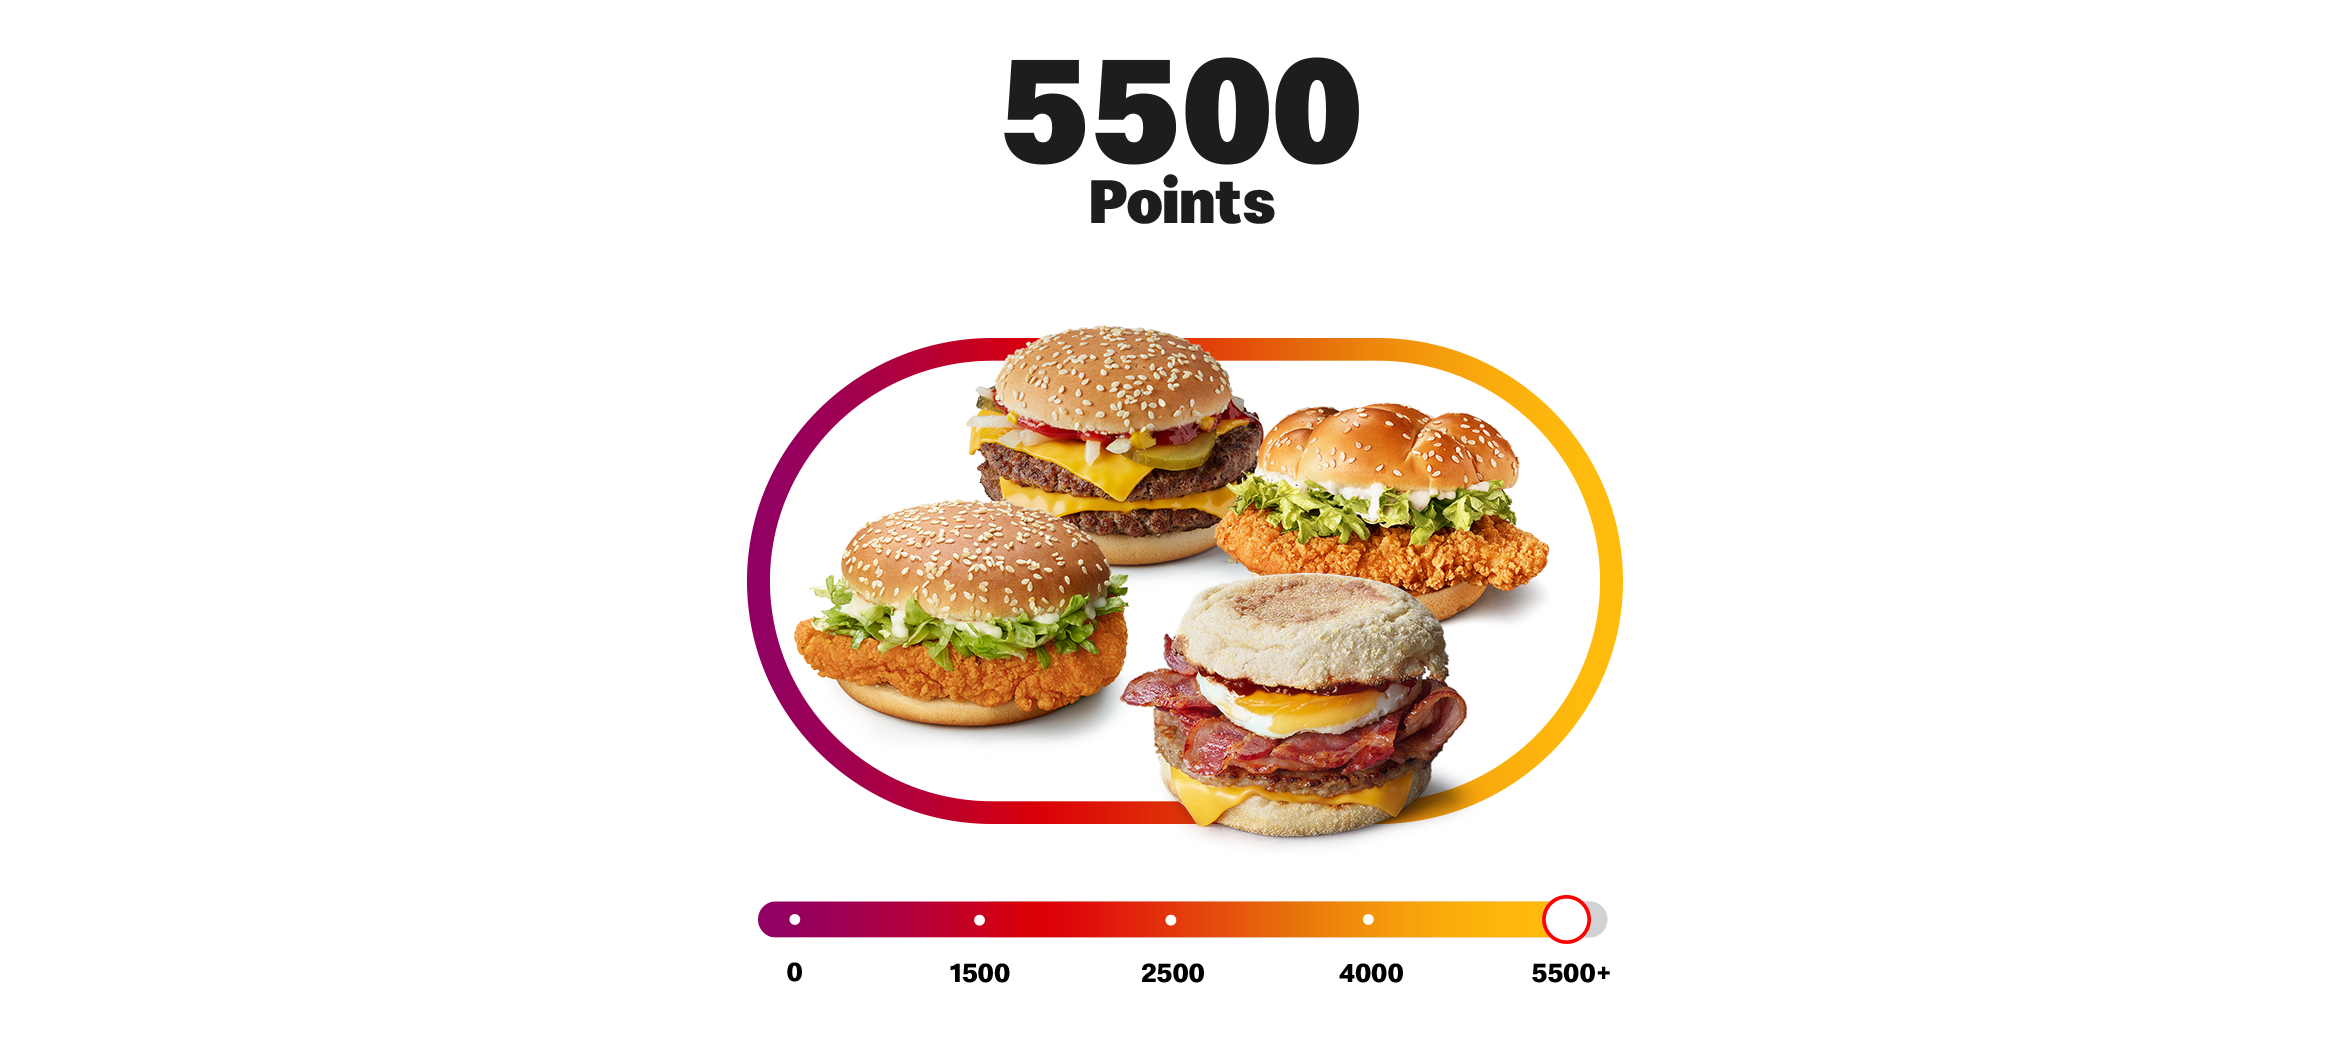 McDonalds - Earn 5500 points